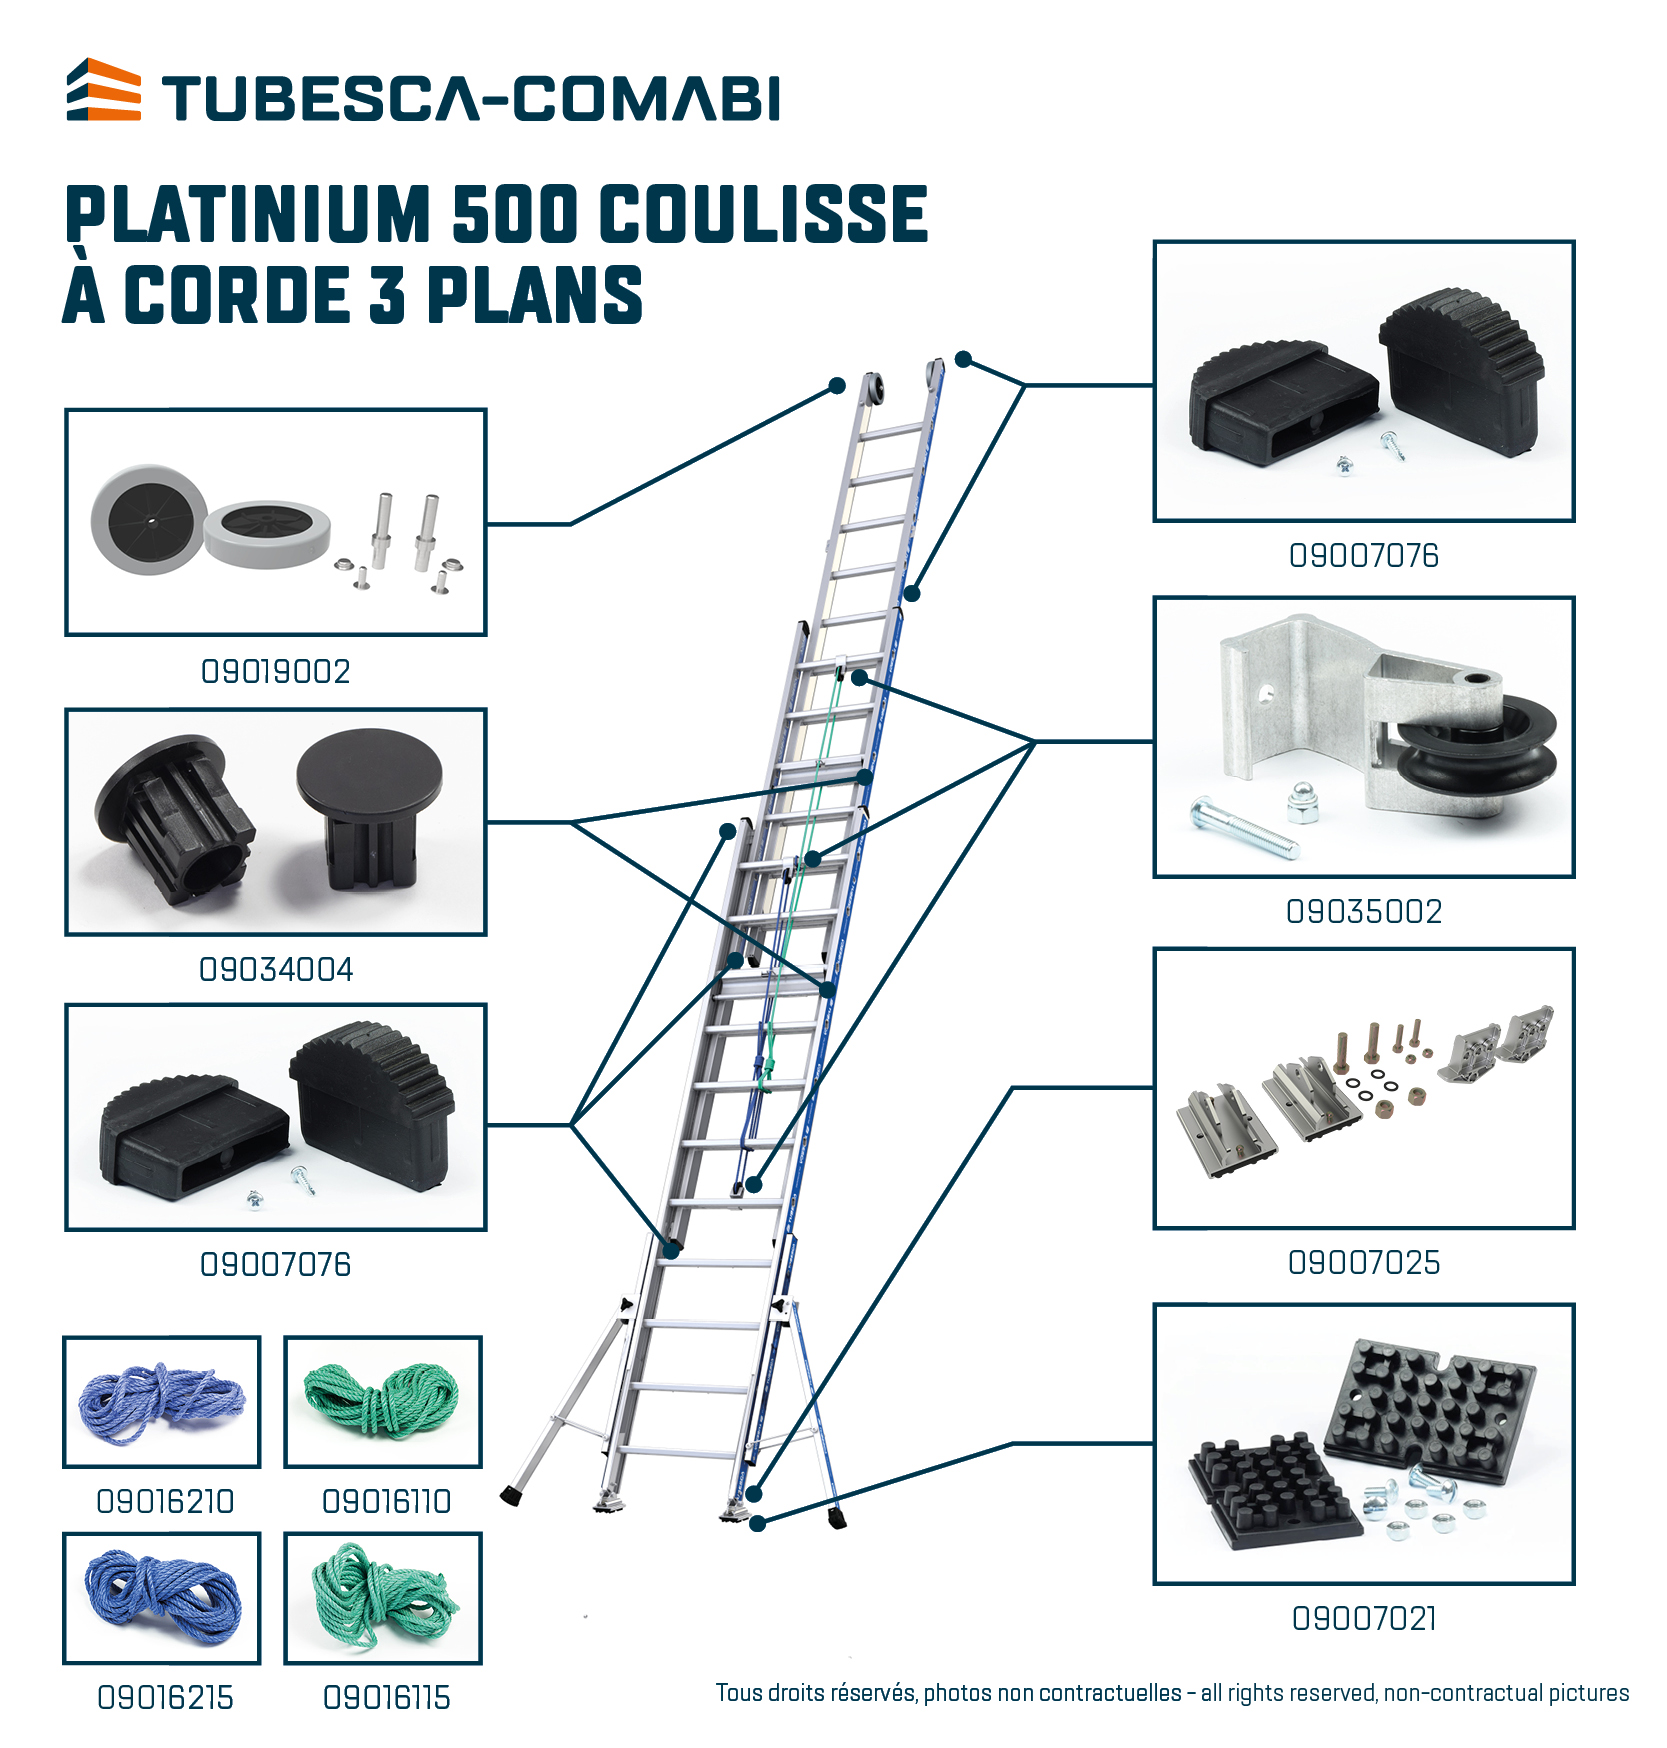 TUBESCA-COMABI - Echelle platinium 500 coulissé corde aluminium - 2 plans -  4 m 73 / 7 m 98 Réf. 02532318